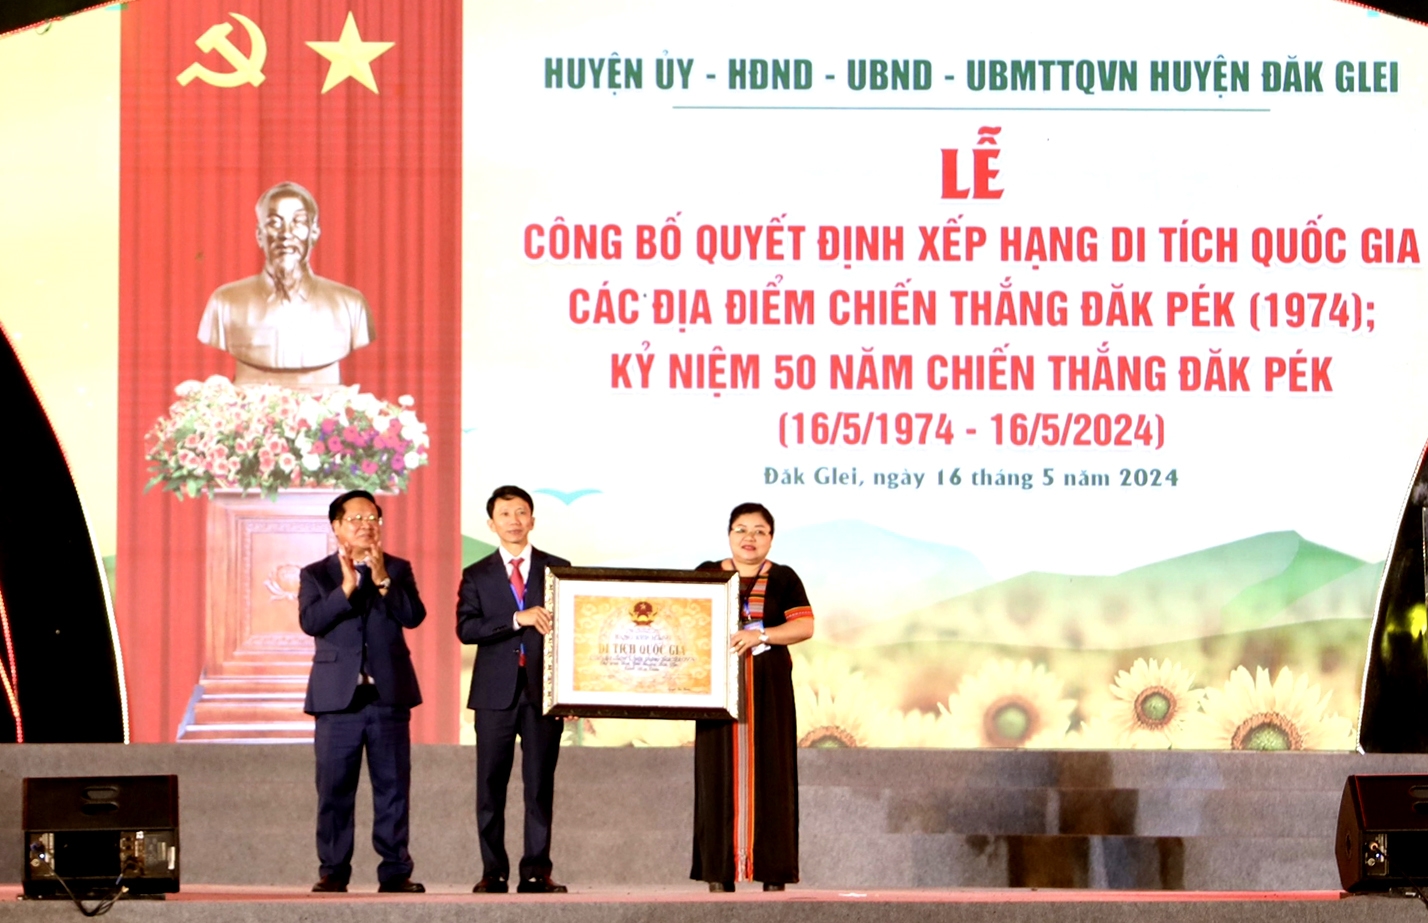 Chủ tịch UBND tỉnh Kon Tum Lê Ngọc Tuấn trao Quyết định của Bộ trưởng Bộ Văn hóa, Thể thao và Du lịch xếp hạng Di tích Quốc gia các địa điểm Chiến thắng Đăk Pék (1974) cho huyện Đăk Glei